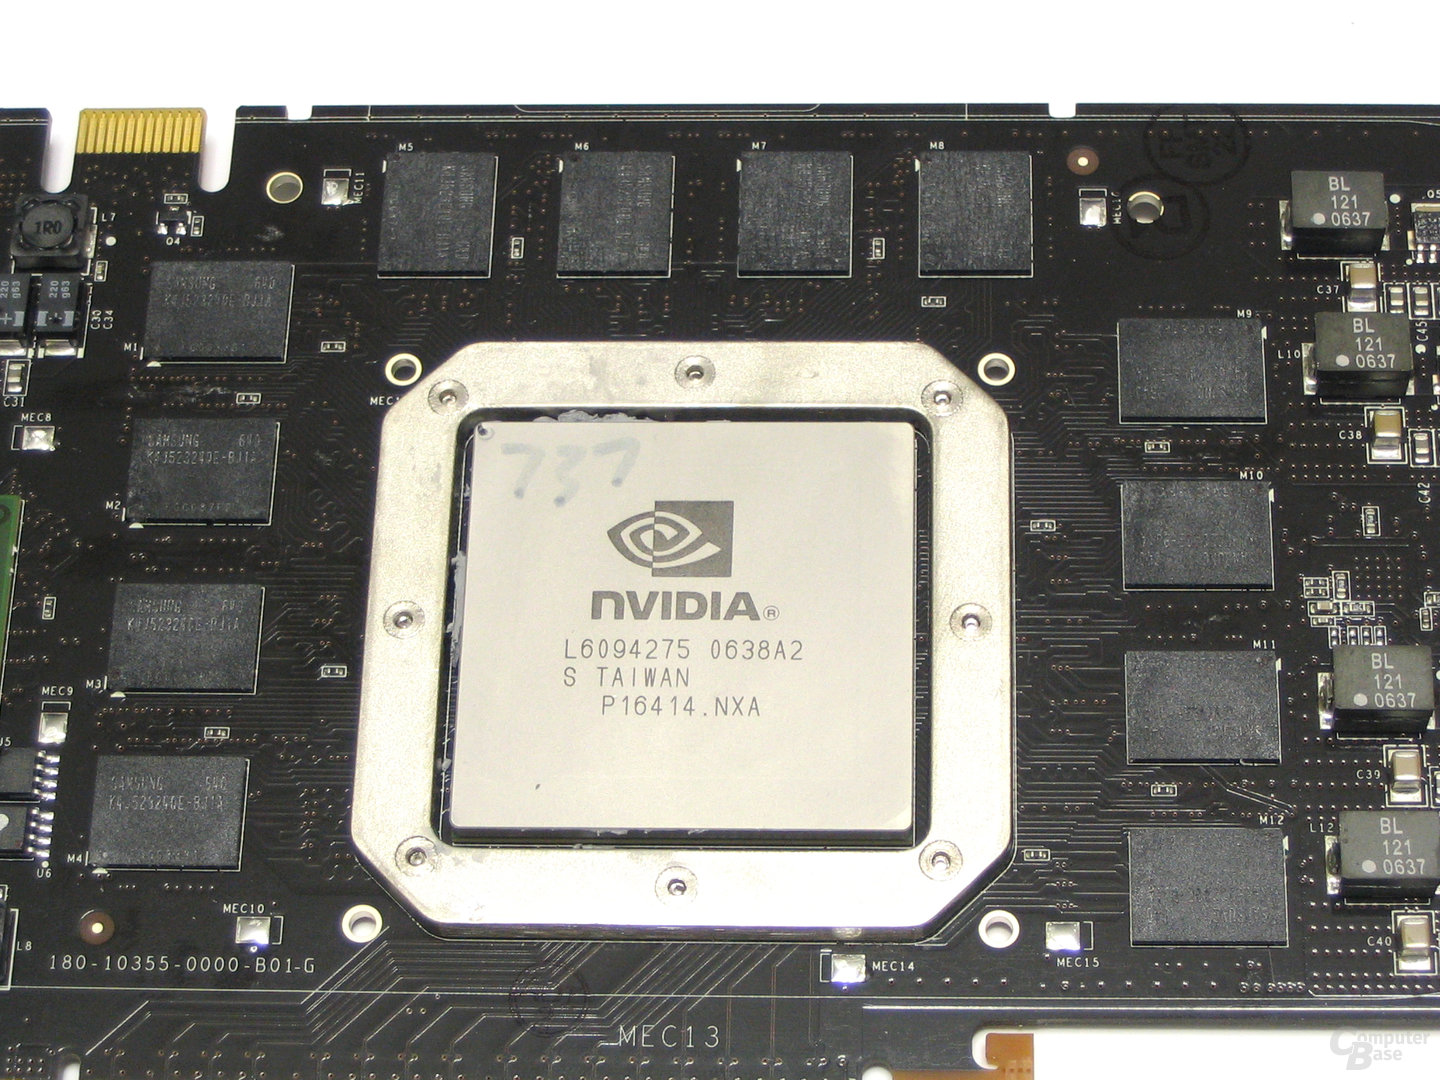 GeForce 8800 GTX VRAM und GPU